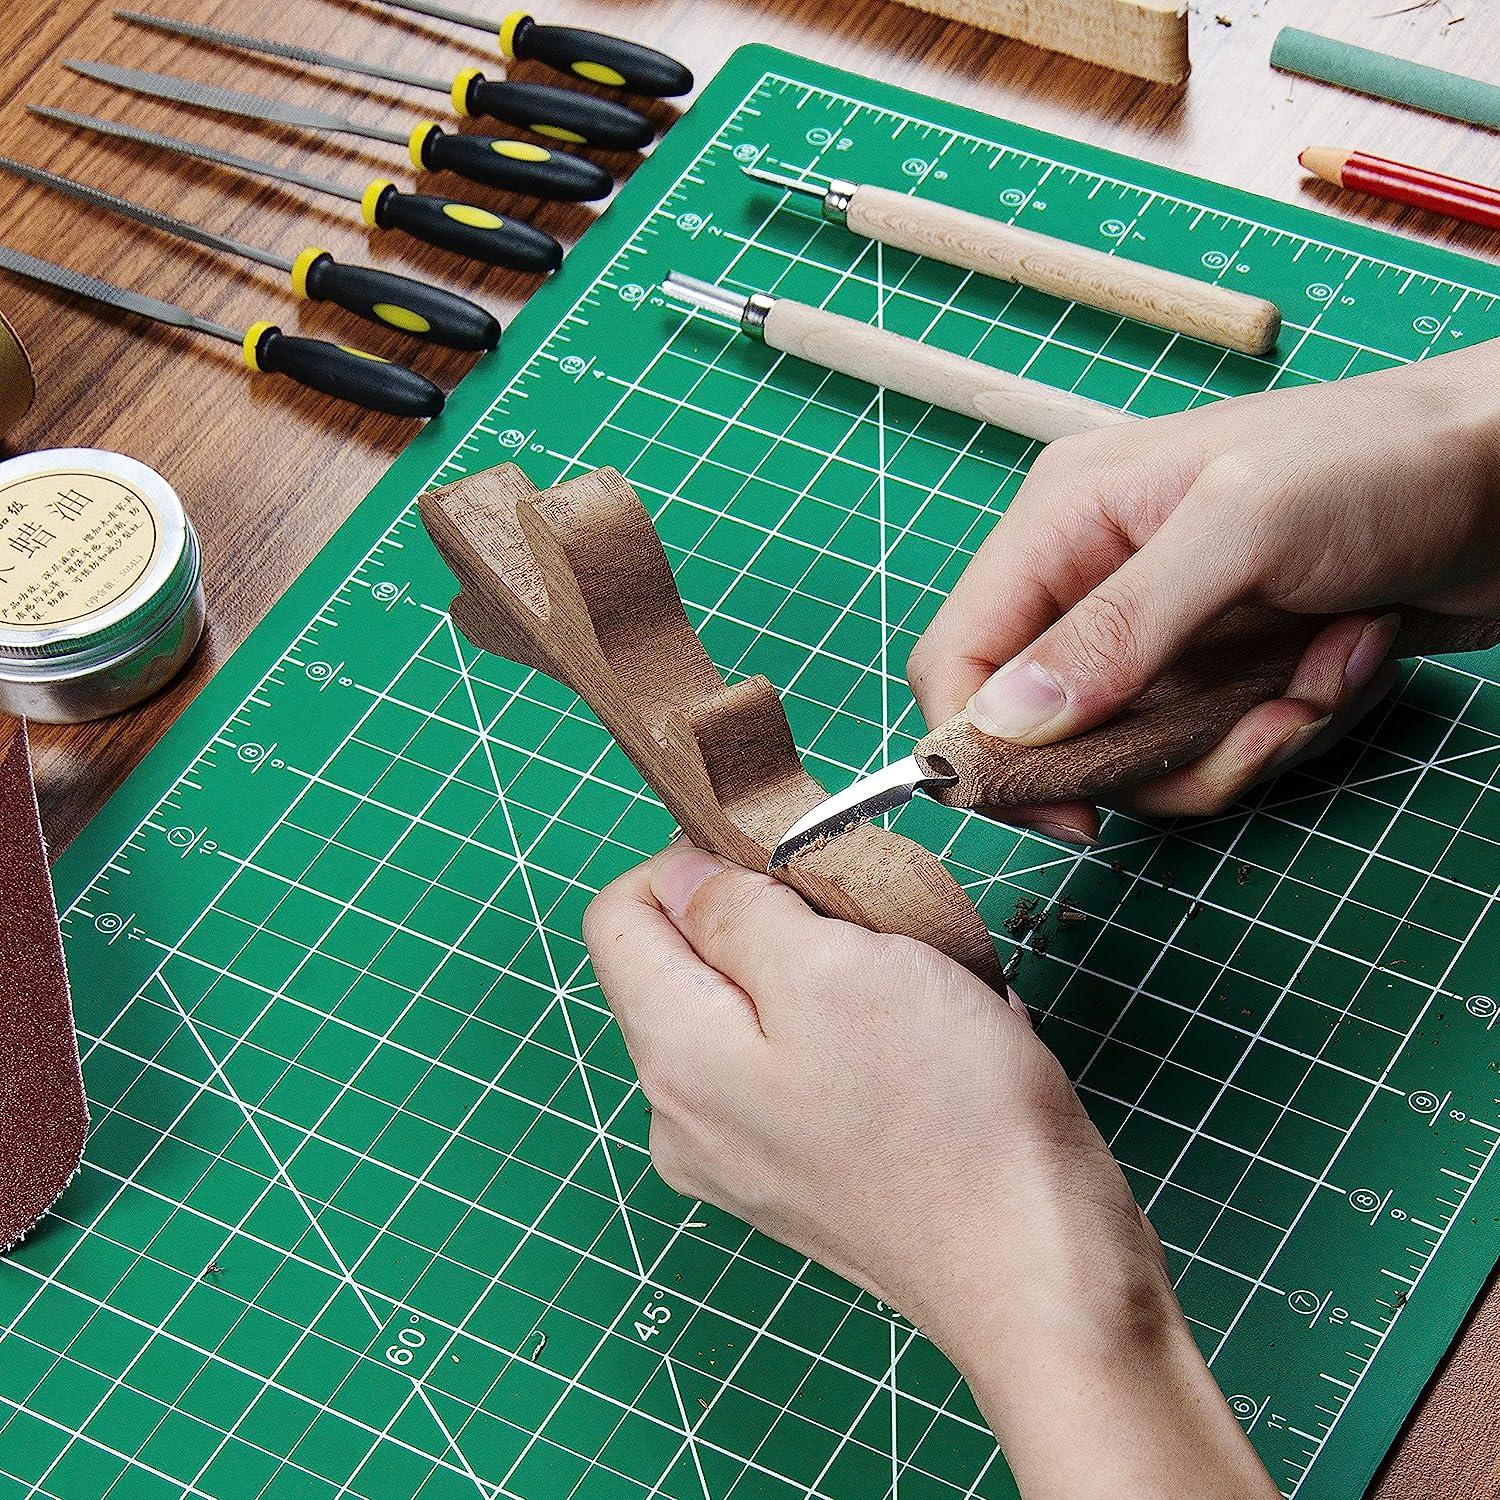  DAUERHAFT 3Pcs Cutting Mat,A4 Mint Green Self Healing Cutting  Mat for Sewing & Crafts,Fabric Cutter for Scrapbooking, Quilting, Fabric,  Sewing Crafts Projects : Arts, Crafts & Sewing